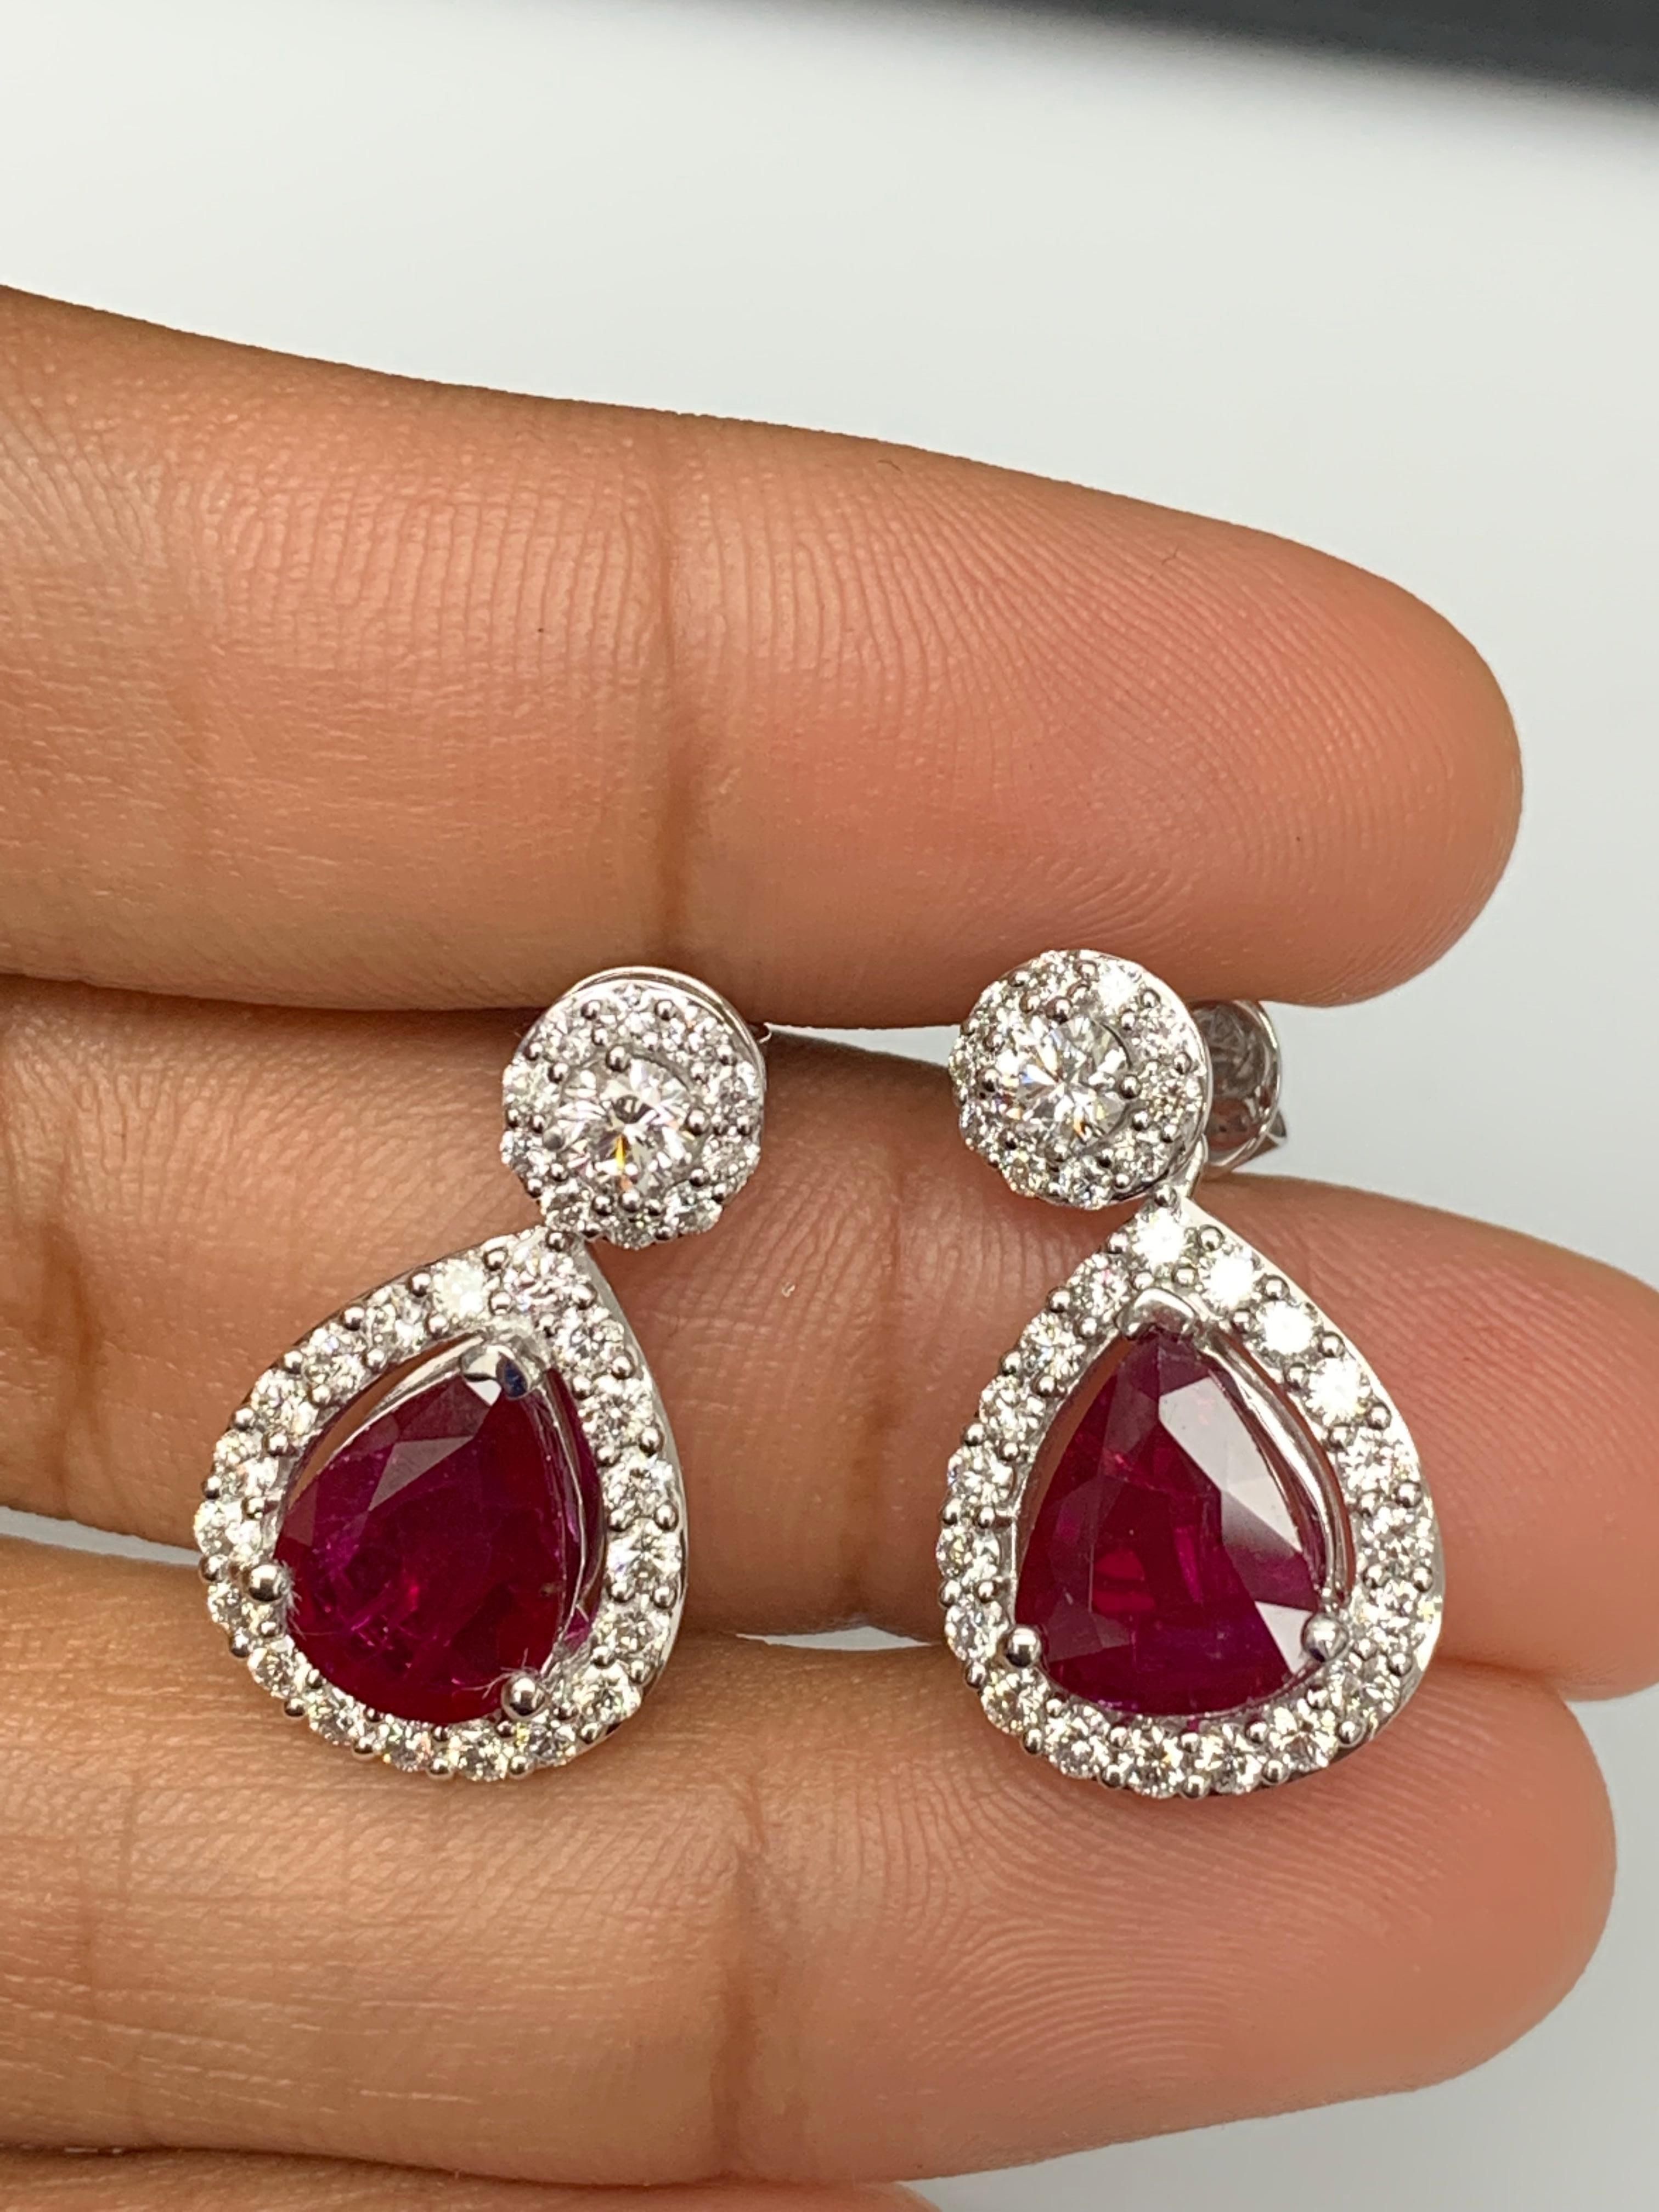 3.56 Carat of Pear Shape Ruby Diamond Drop Earrings in 18K White Gold For Sale 6